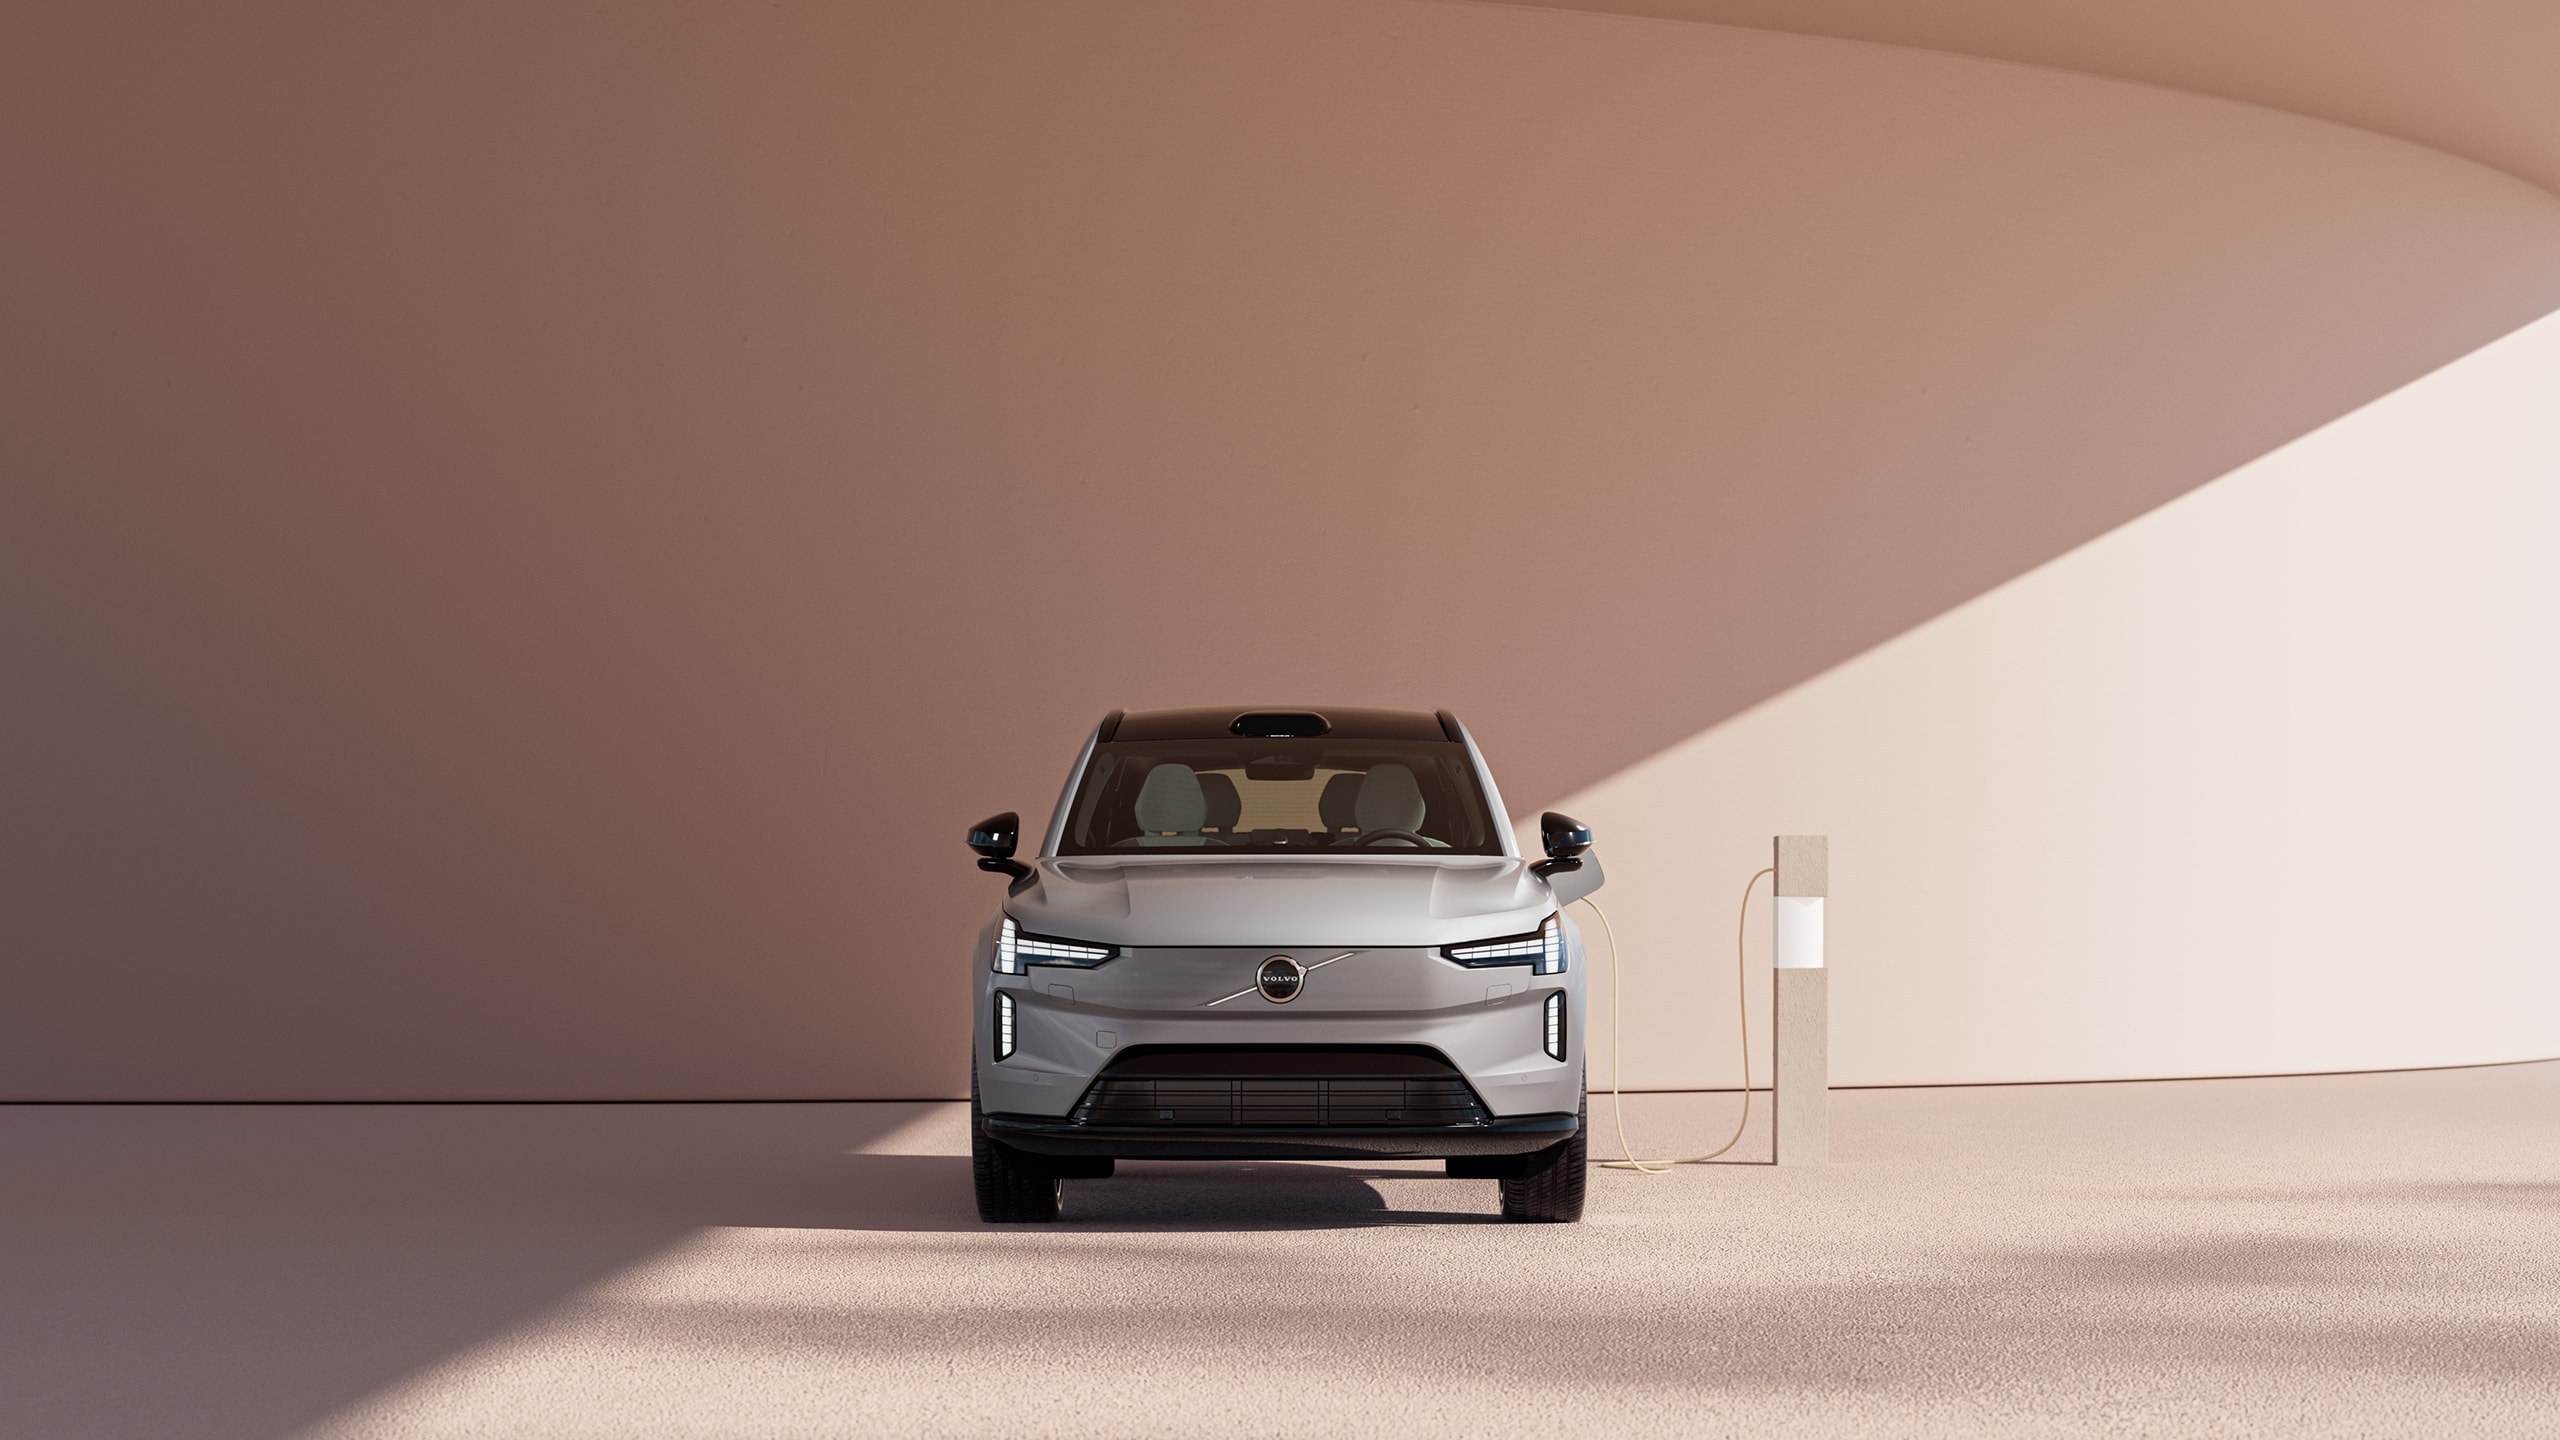 מבט מלפנים על רכב הפנאי-שטח החשמלי החדש של וולוו EX90 בטעינה, על דיונה חולית